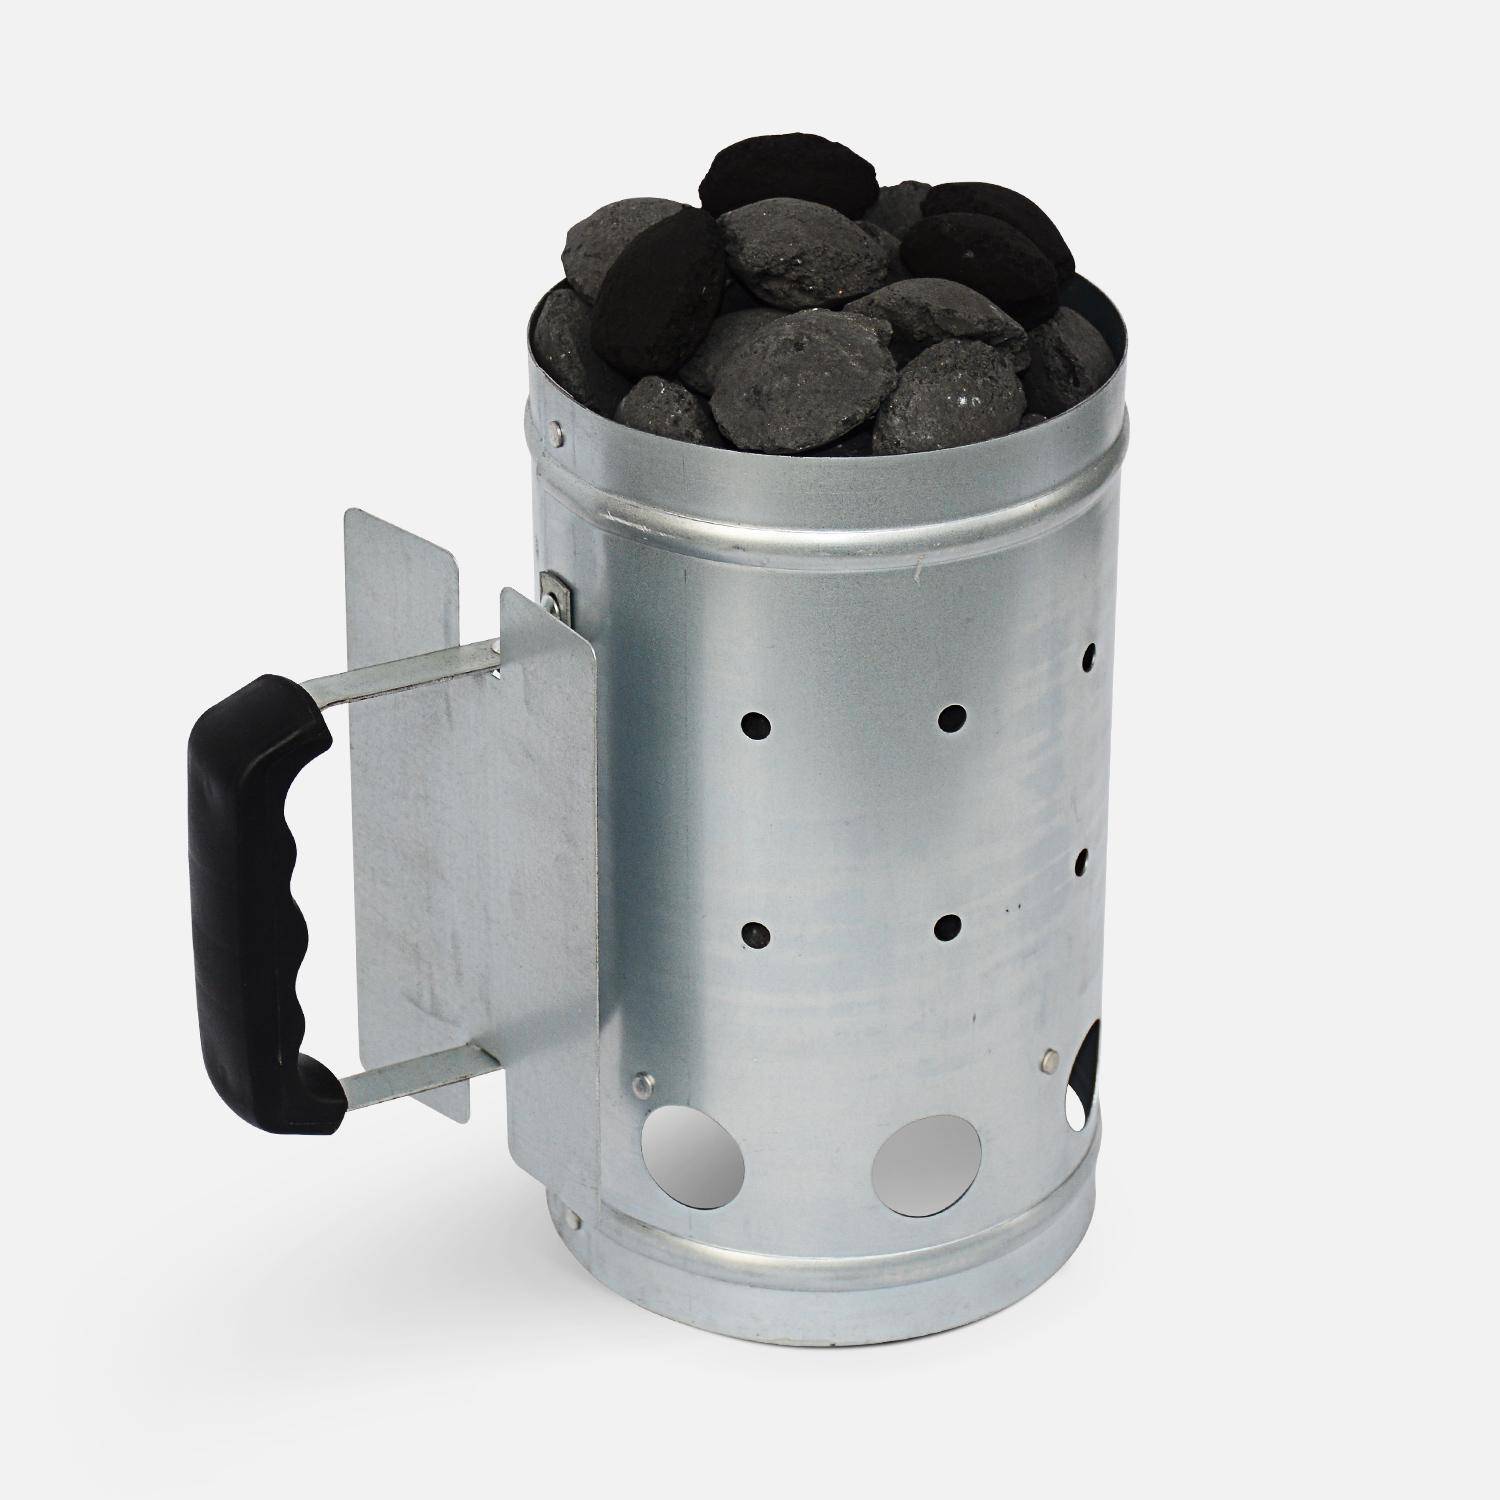 Brikettenstarter voor houtskool barbecue, van gegalvaniseerd staal - aluminium  Photo1